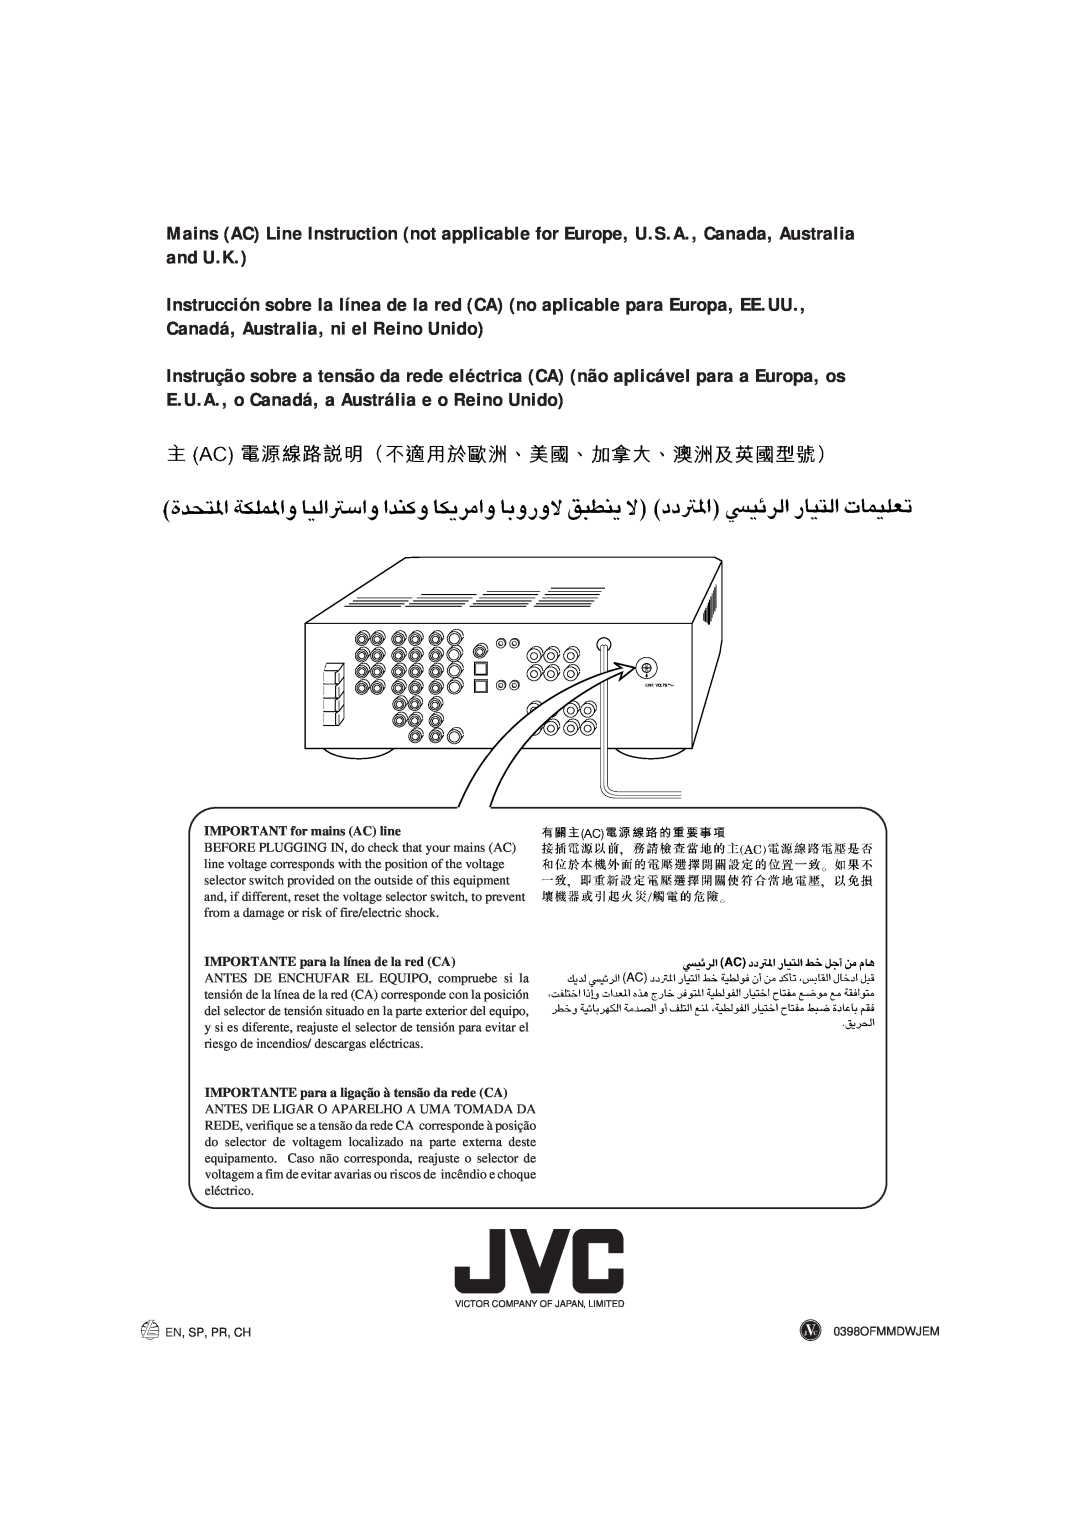 JVC RX-884PBK manual IMPORTANT for mains AC line, IMPORTANTE para la línea de la red CA, En, Sp, Pr, Ch, 0398OFMMDWJEM 